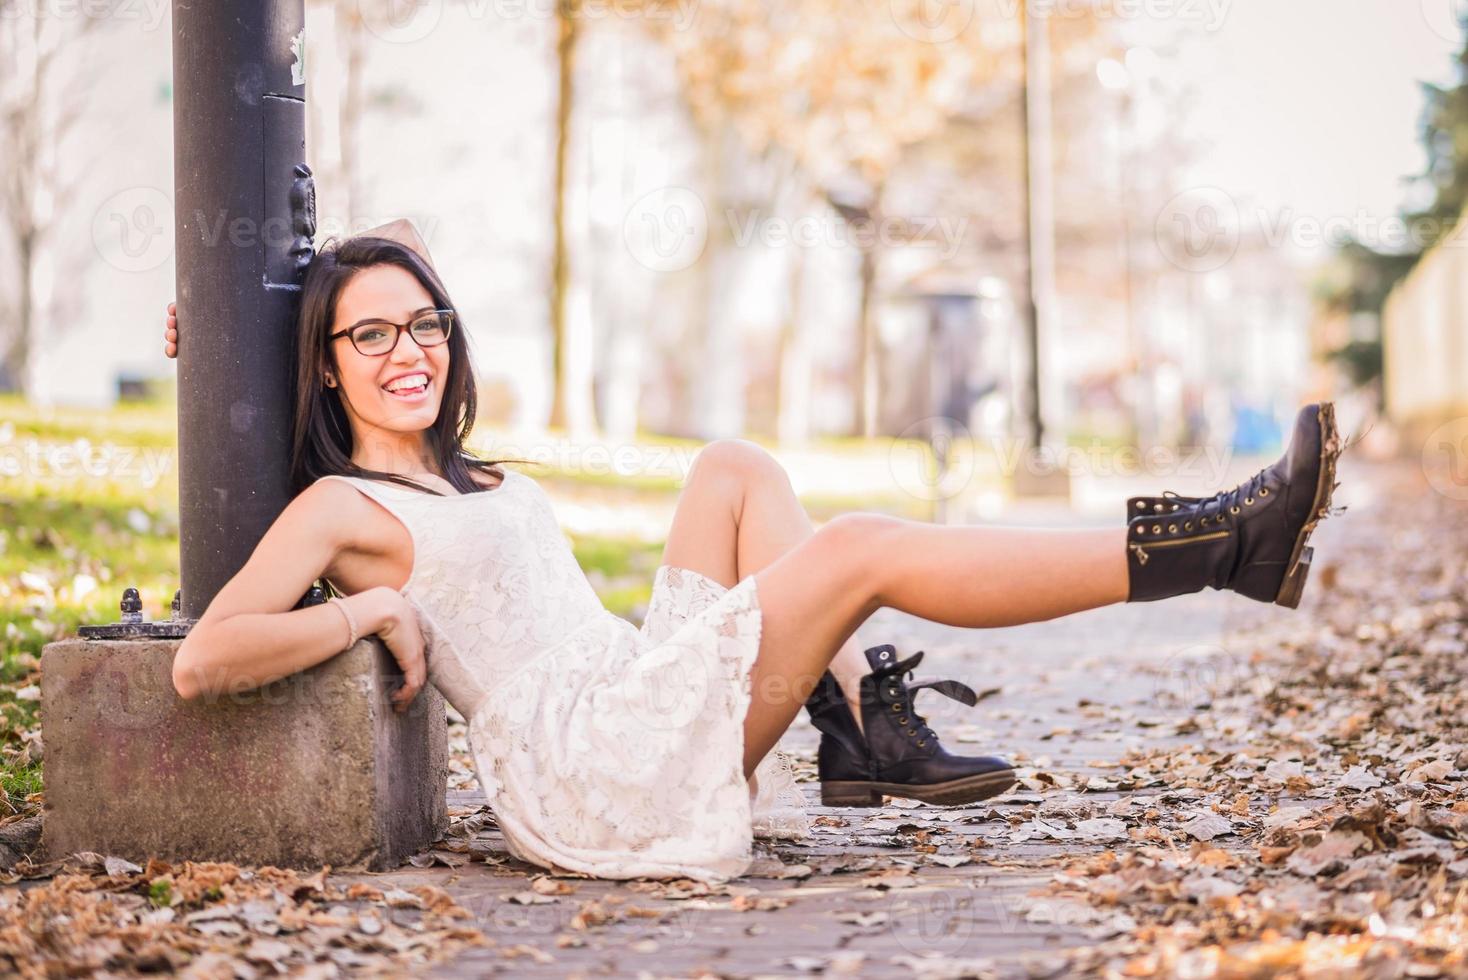 chica feliz modelo de moda con tacones altos sentada en el suelo foto